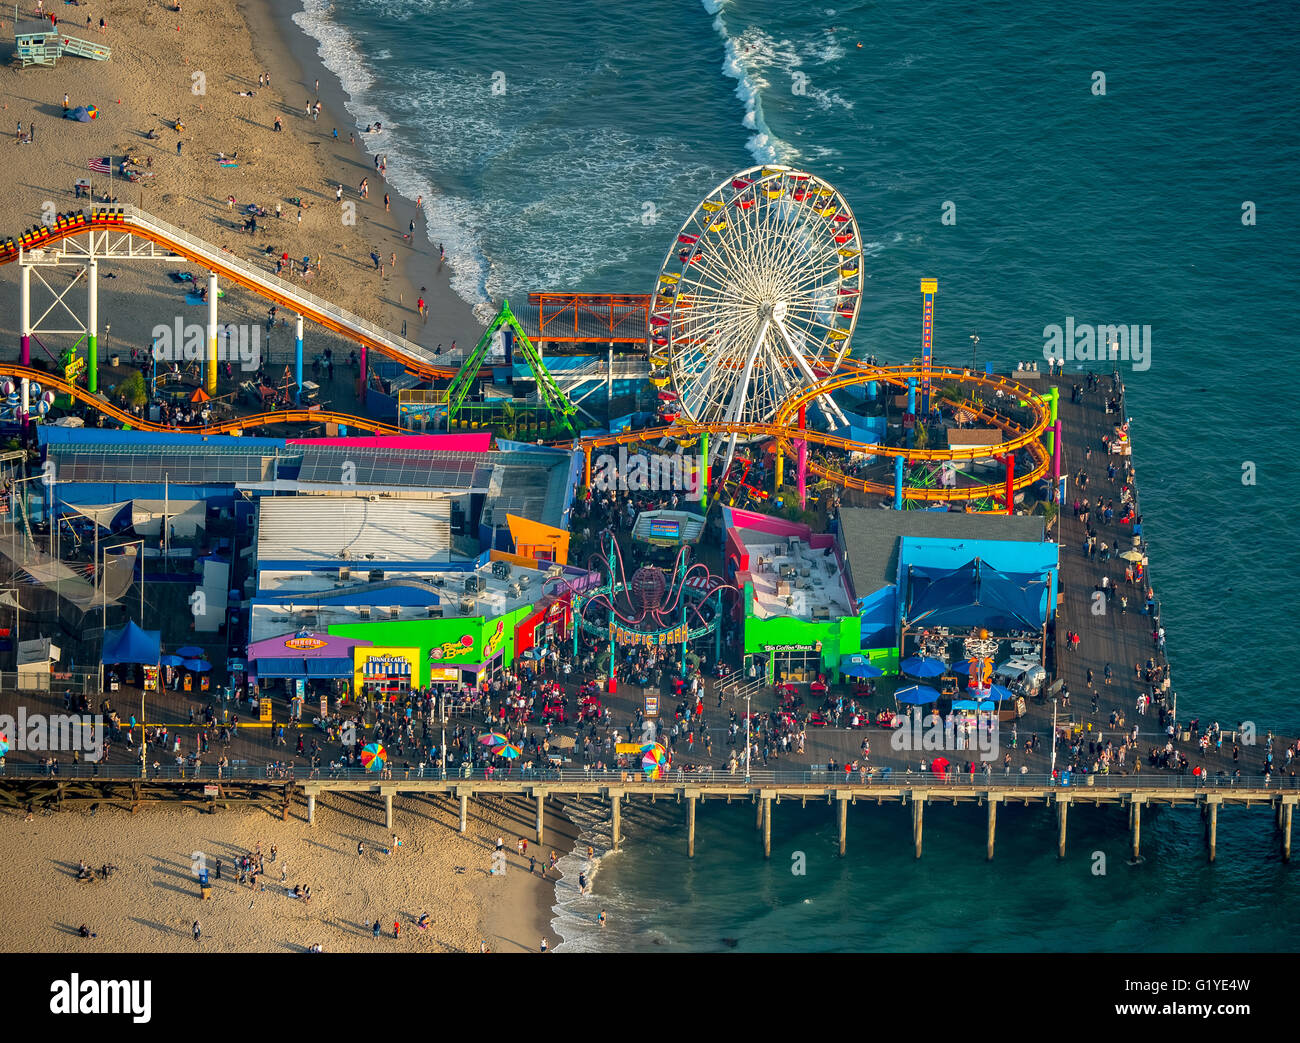 Océan Pacifique, Santa Monica Pier avec grande roue et montagnes russes, Marina del Rey, Los Angeles County, Californie, USA Banque D'Images